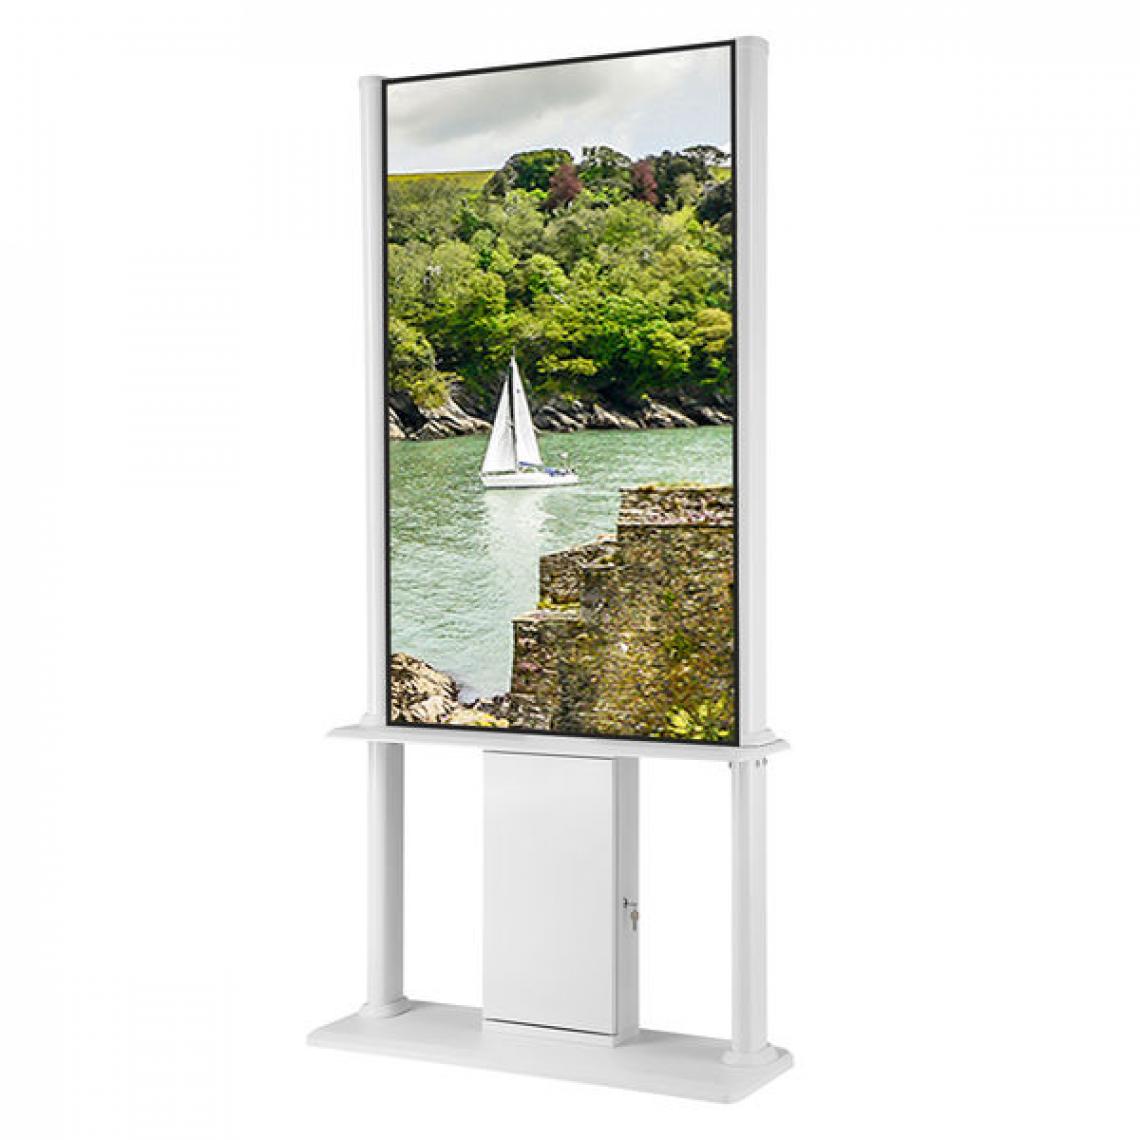 Kimex - Kiosque d'affichage dynamique 55" UHD 500cd/m² 24h/7j, Blanc - Moniteur PC